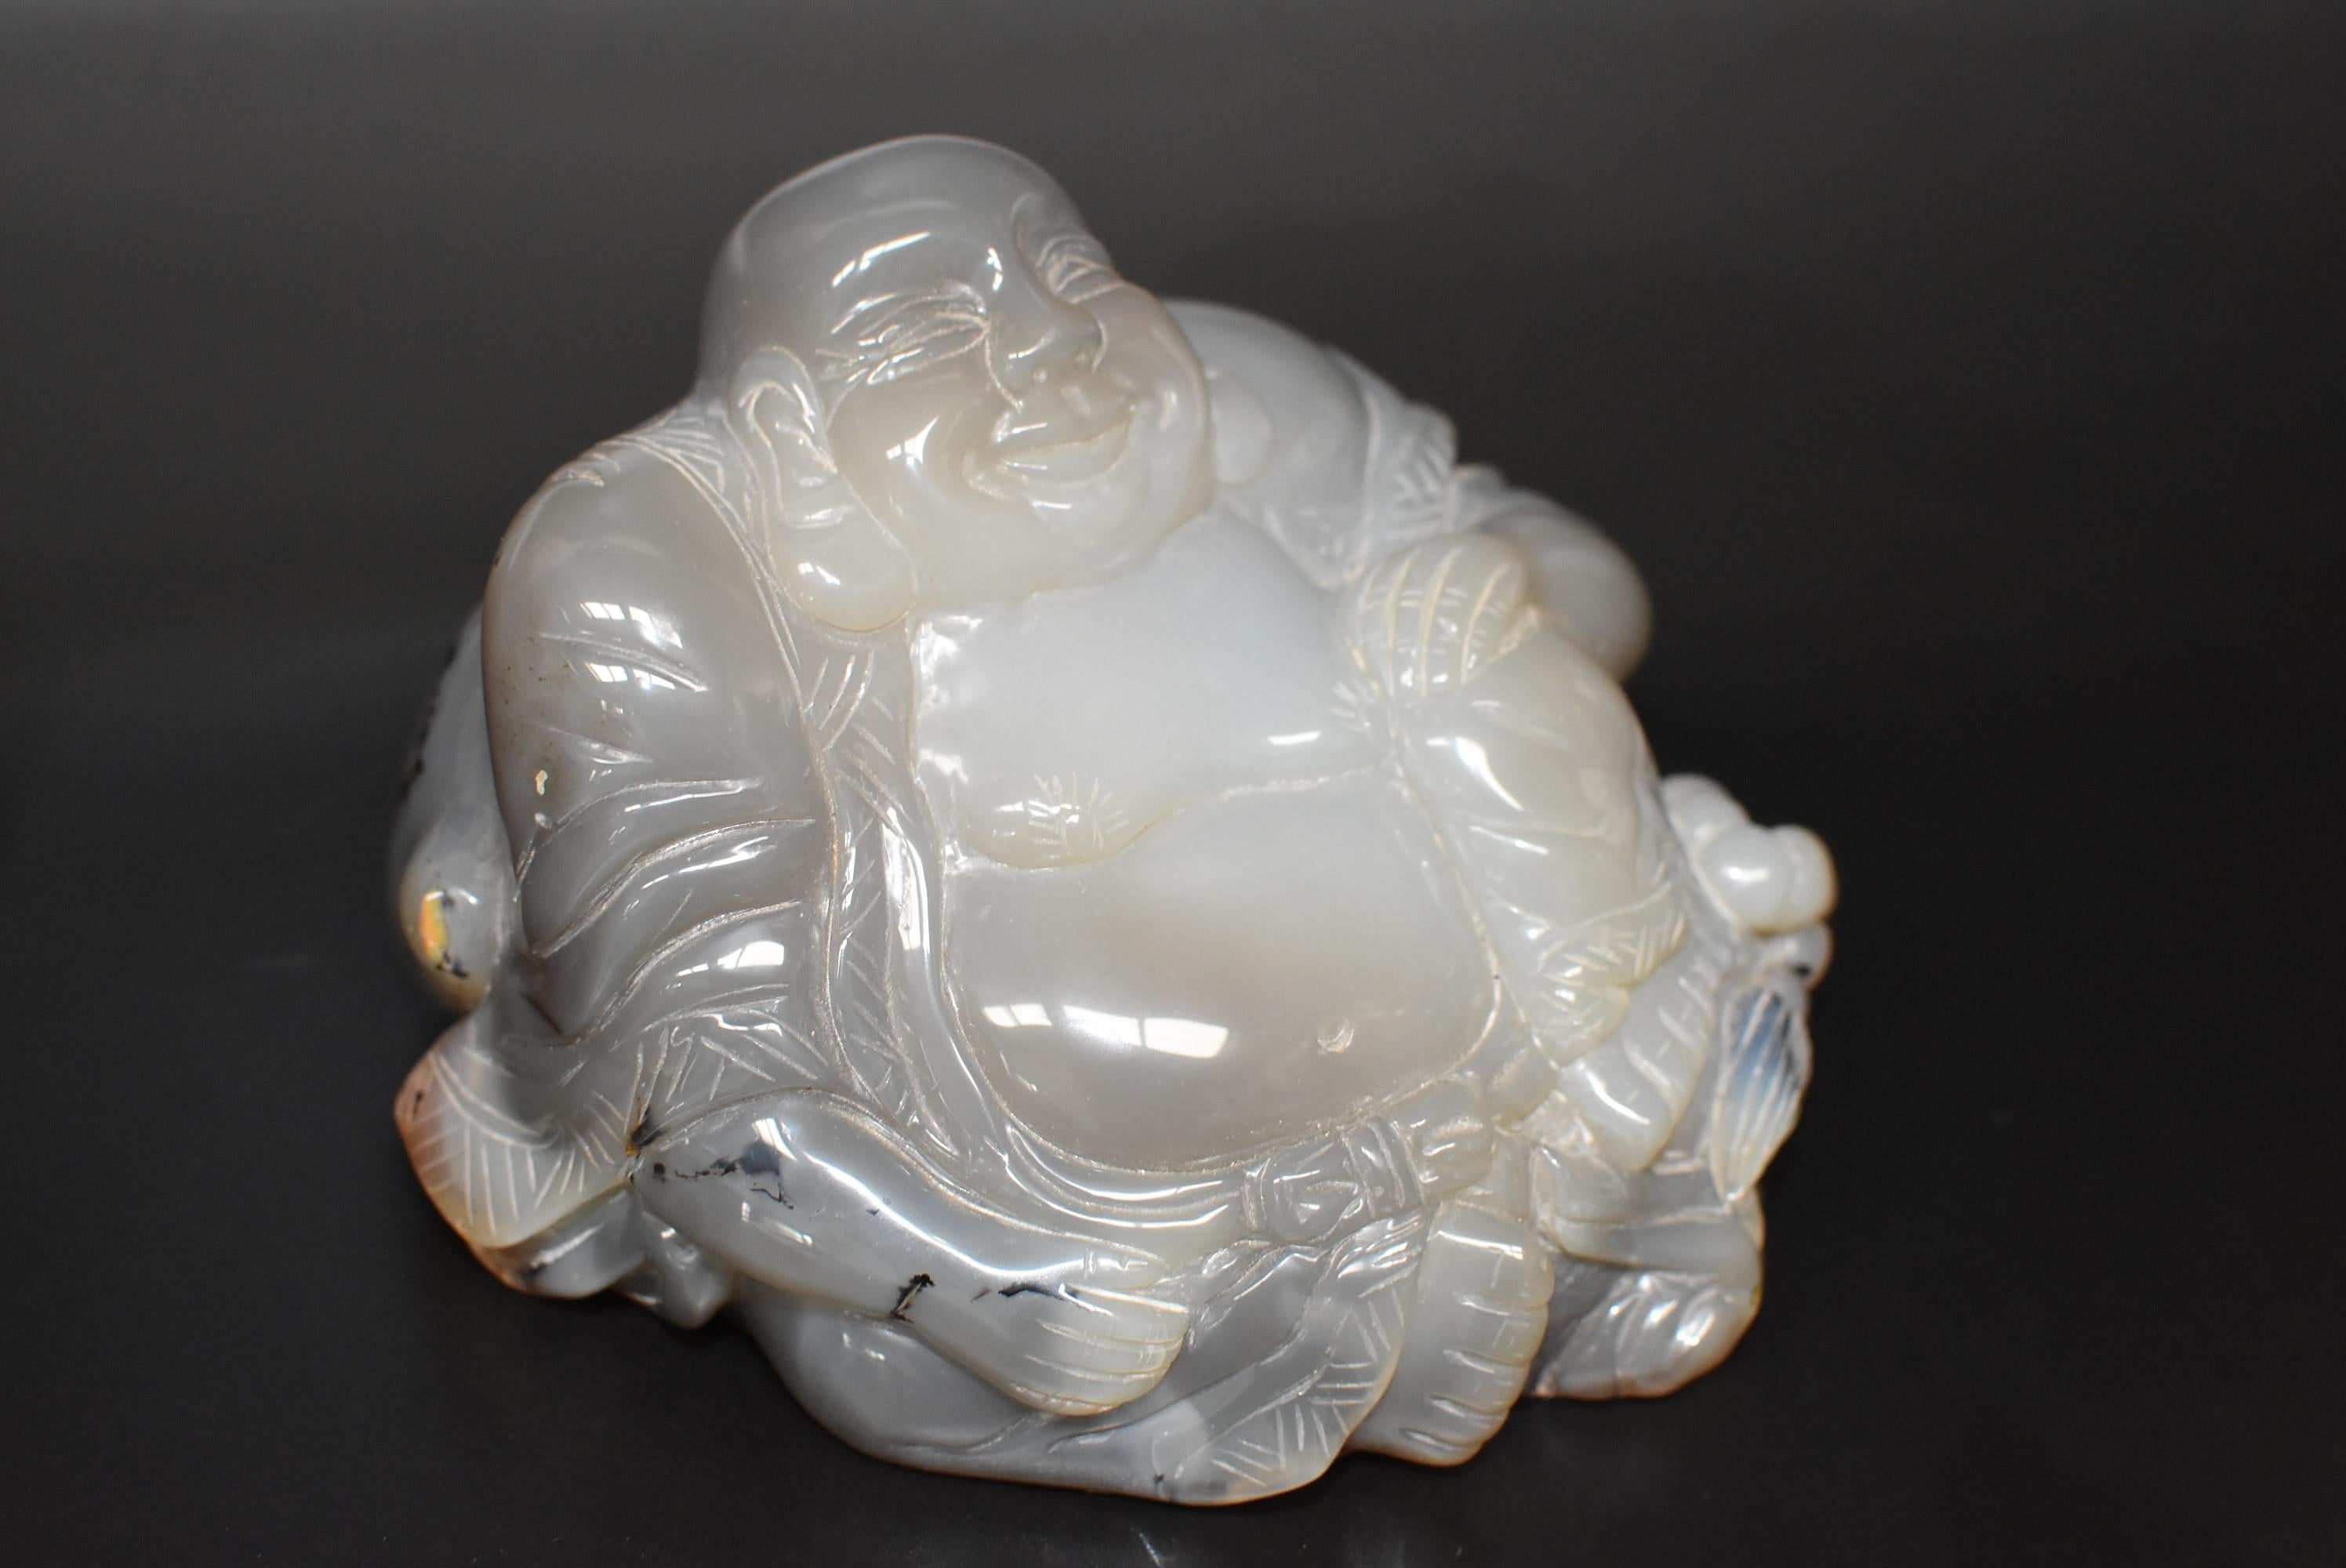 Ein handgeschnitzter, massiver Achat-Buddha. Er wird sitzend mit offenem Gewand dargestellt, das unter dem Bauch mit einer Schleife zusammengehalten wird, ein Ausdruck für große Zuwendung. Der glückliche Buddha ist eine geliebte Gottheit, die Glück